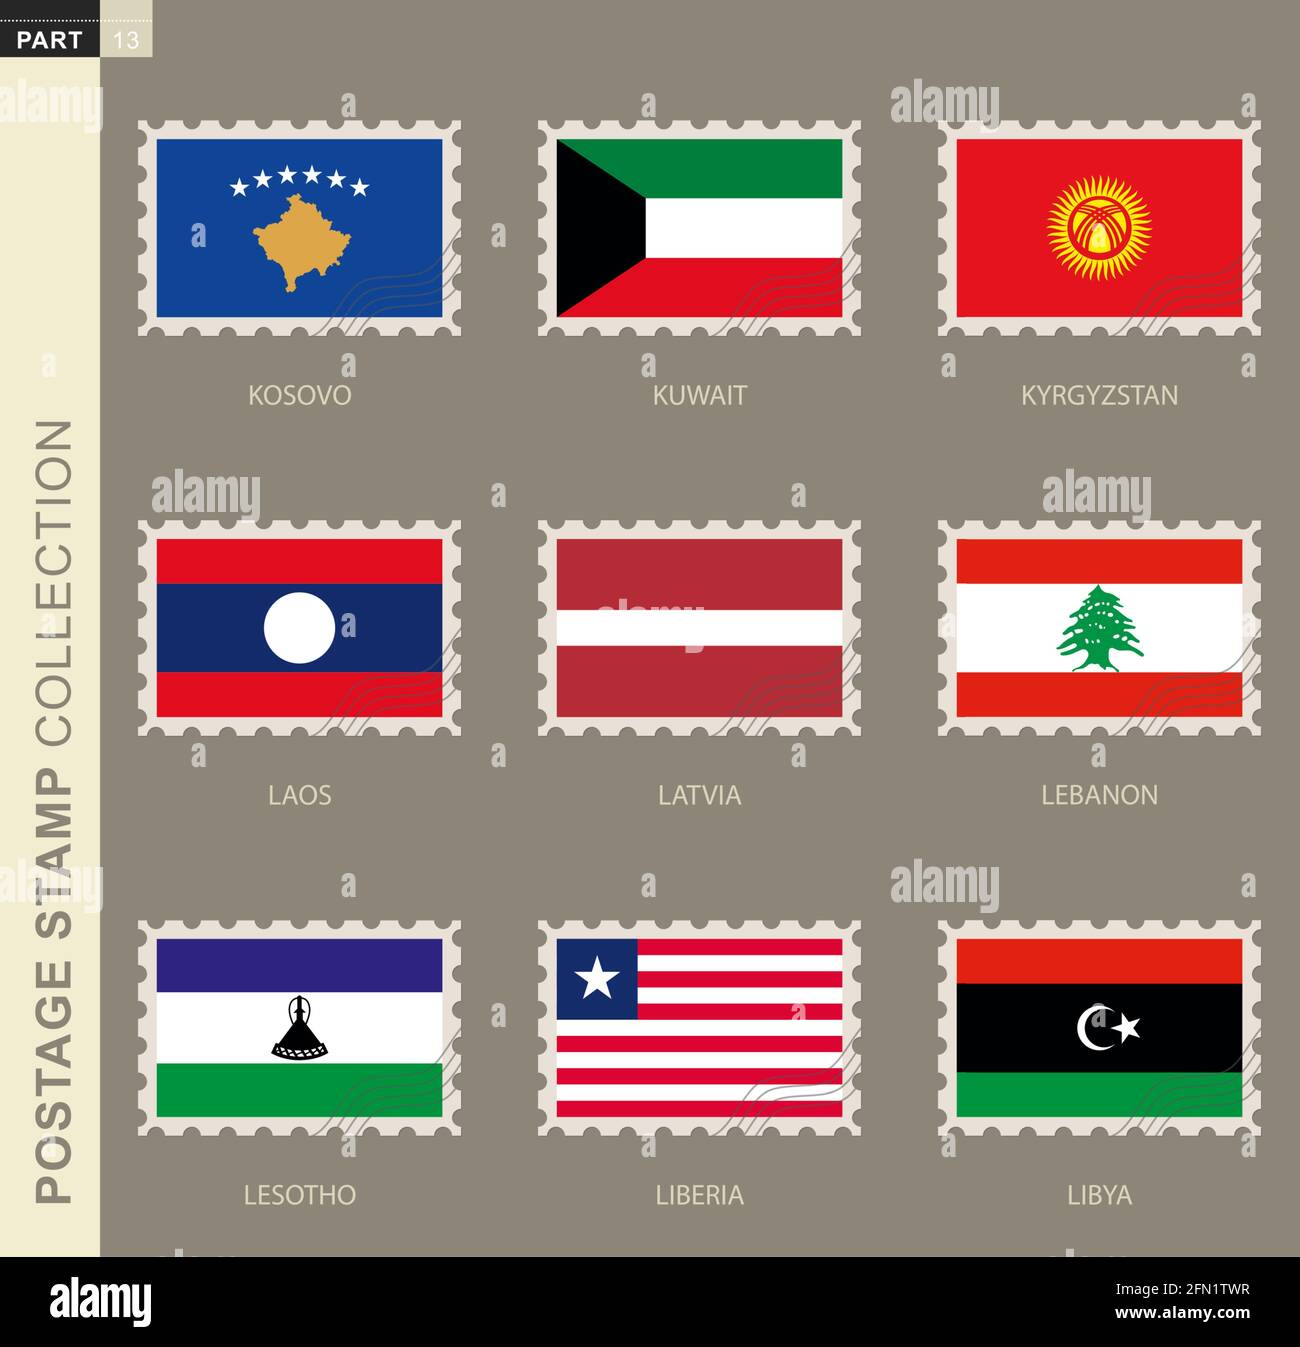 Postage stamp with flag, collection of 9 flag: Kosovo, Kuwait, Kyrgyzstan, Laos, Latvia, Lebanon, Lesotho, Liberia, Libya Stock Vector